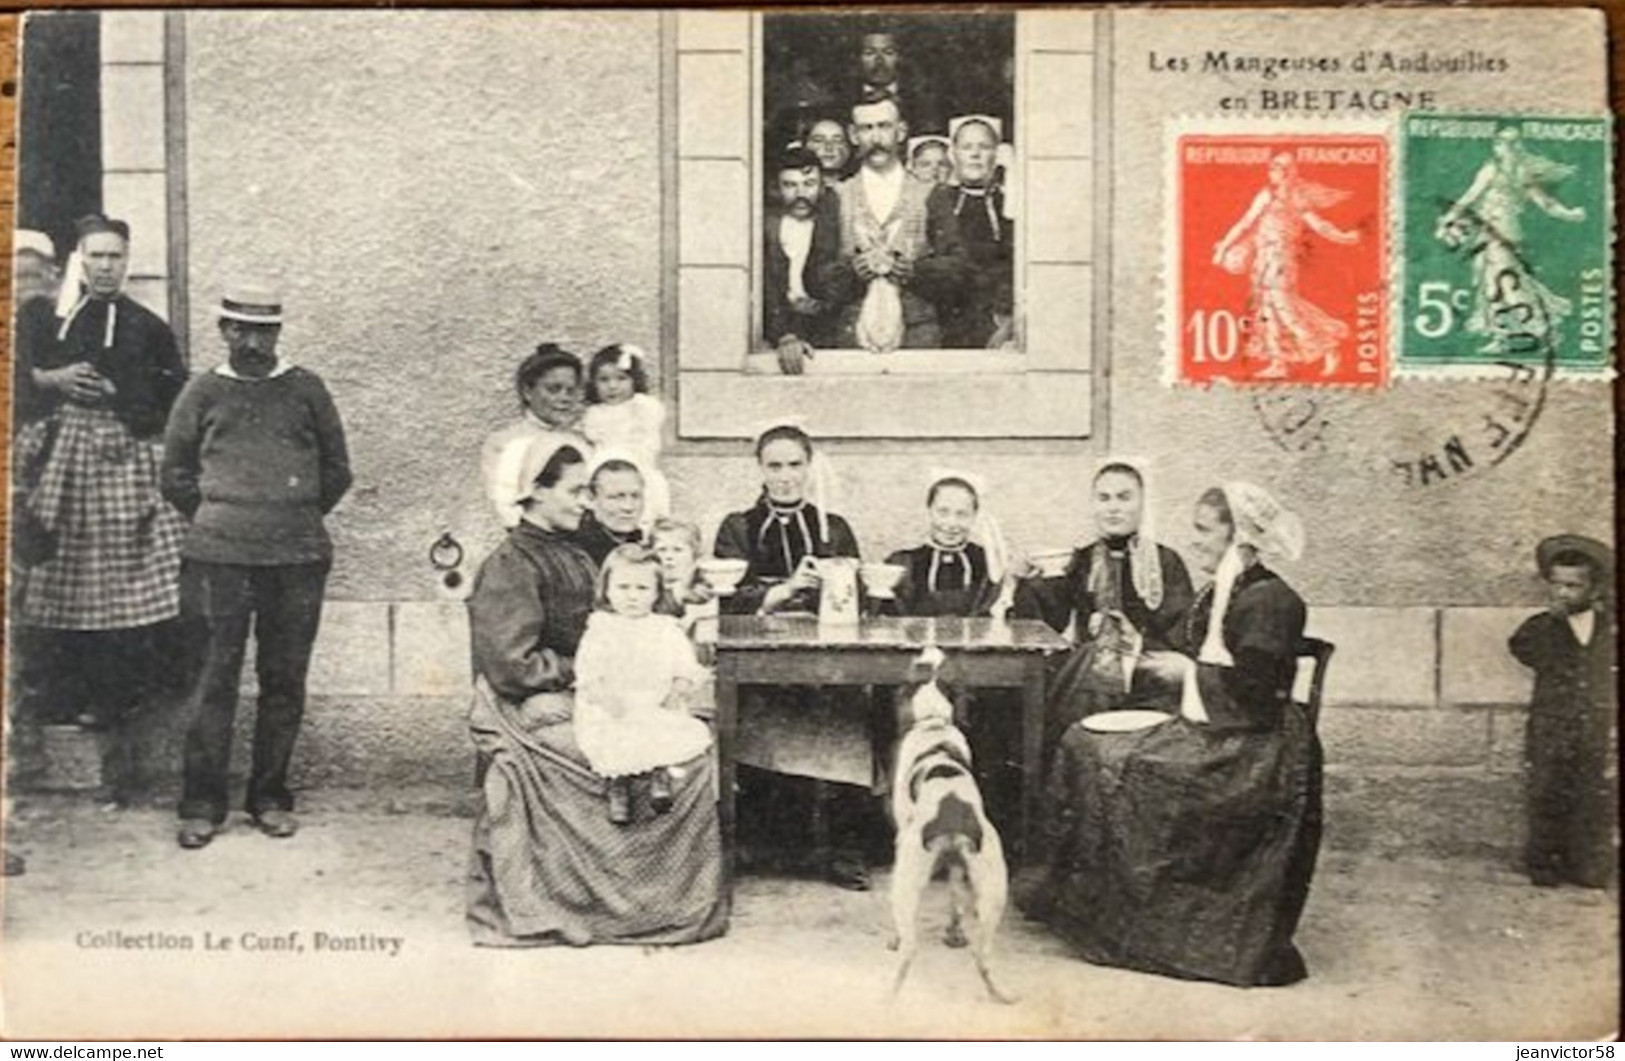 Les Mangeuse D'andouilles En Bretagne Collect  Le Cunf Pontivy - Guemene Sur Scorff